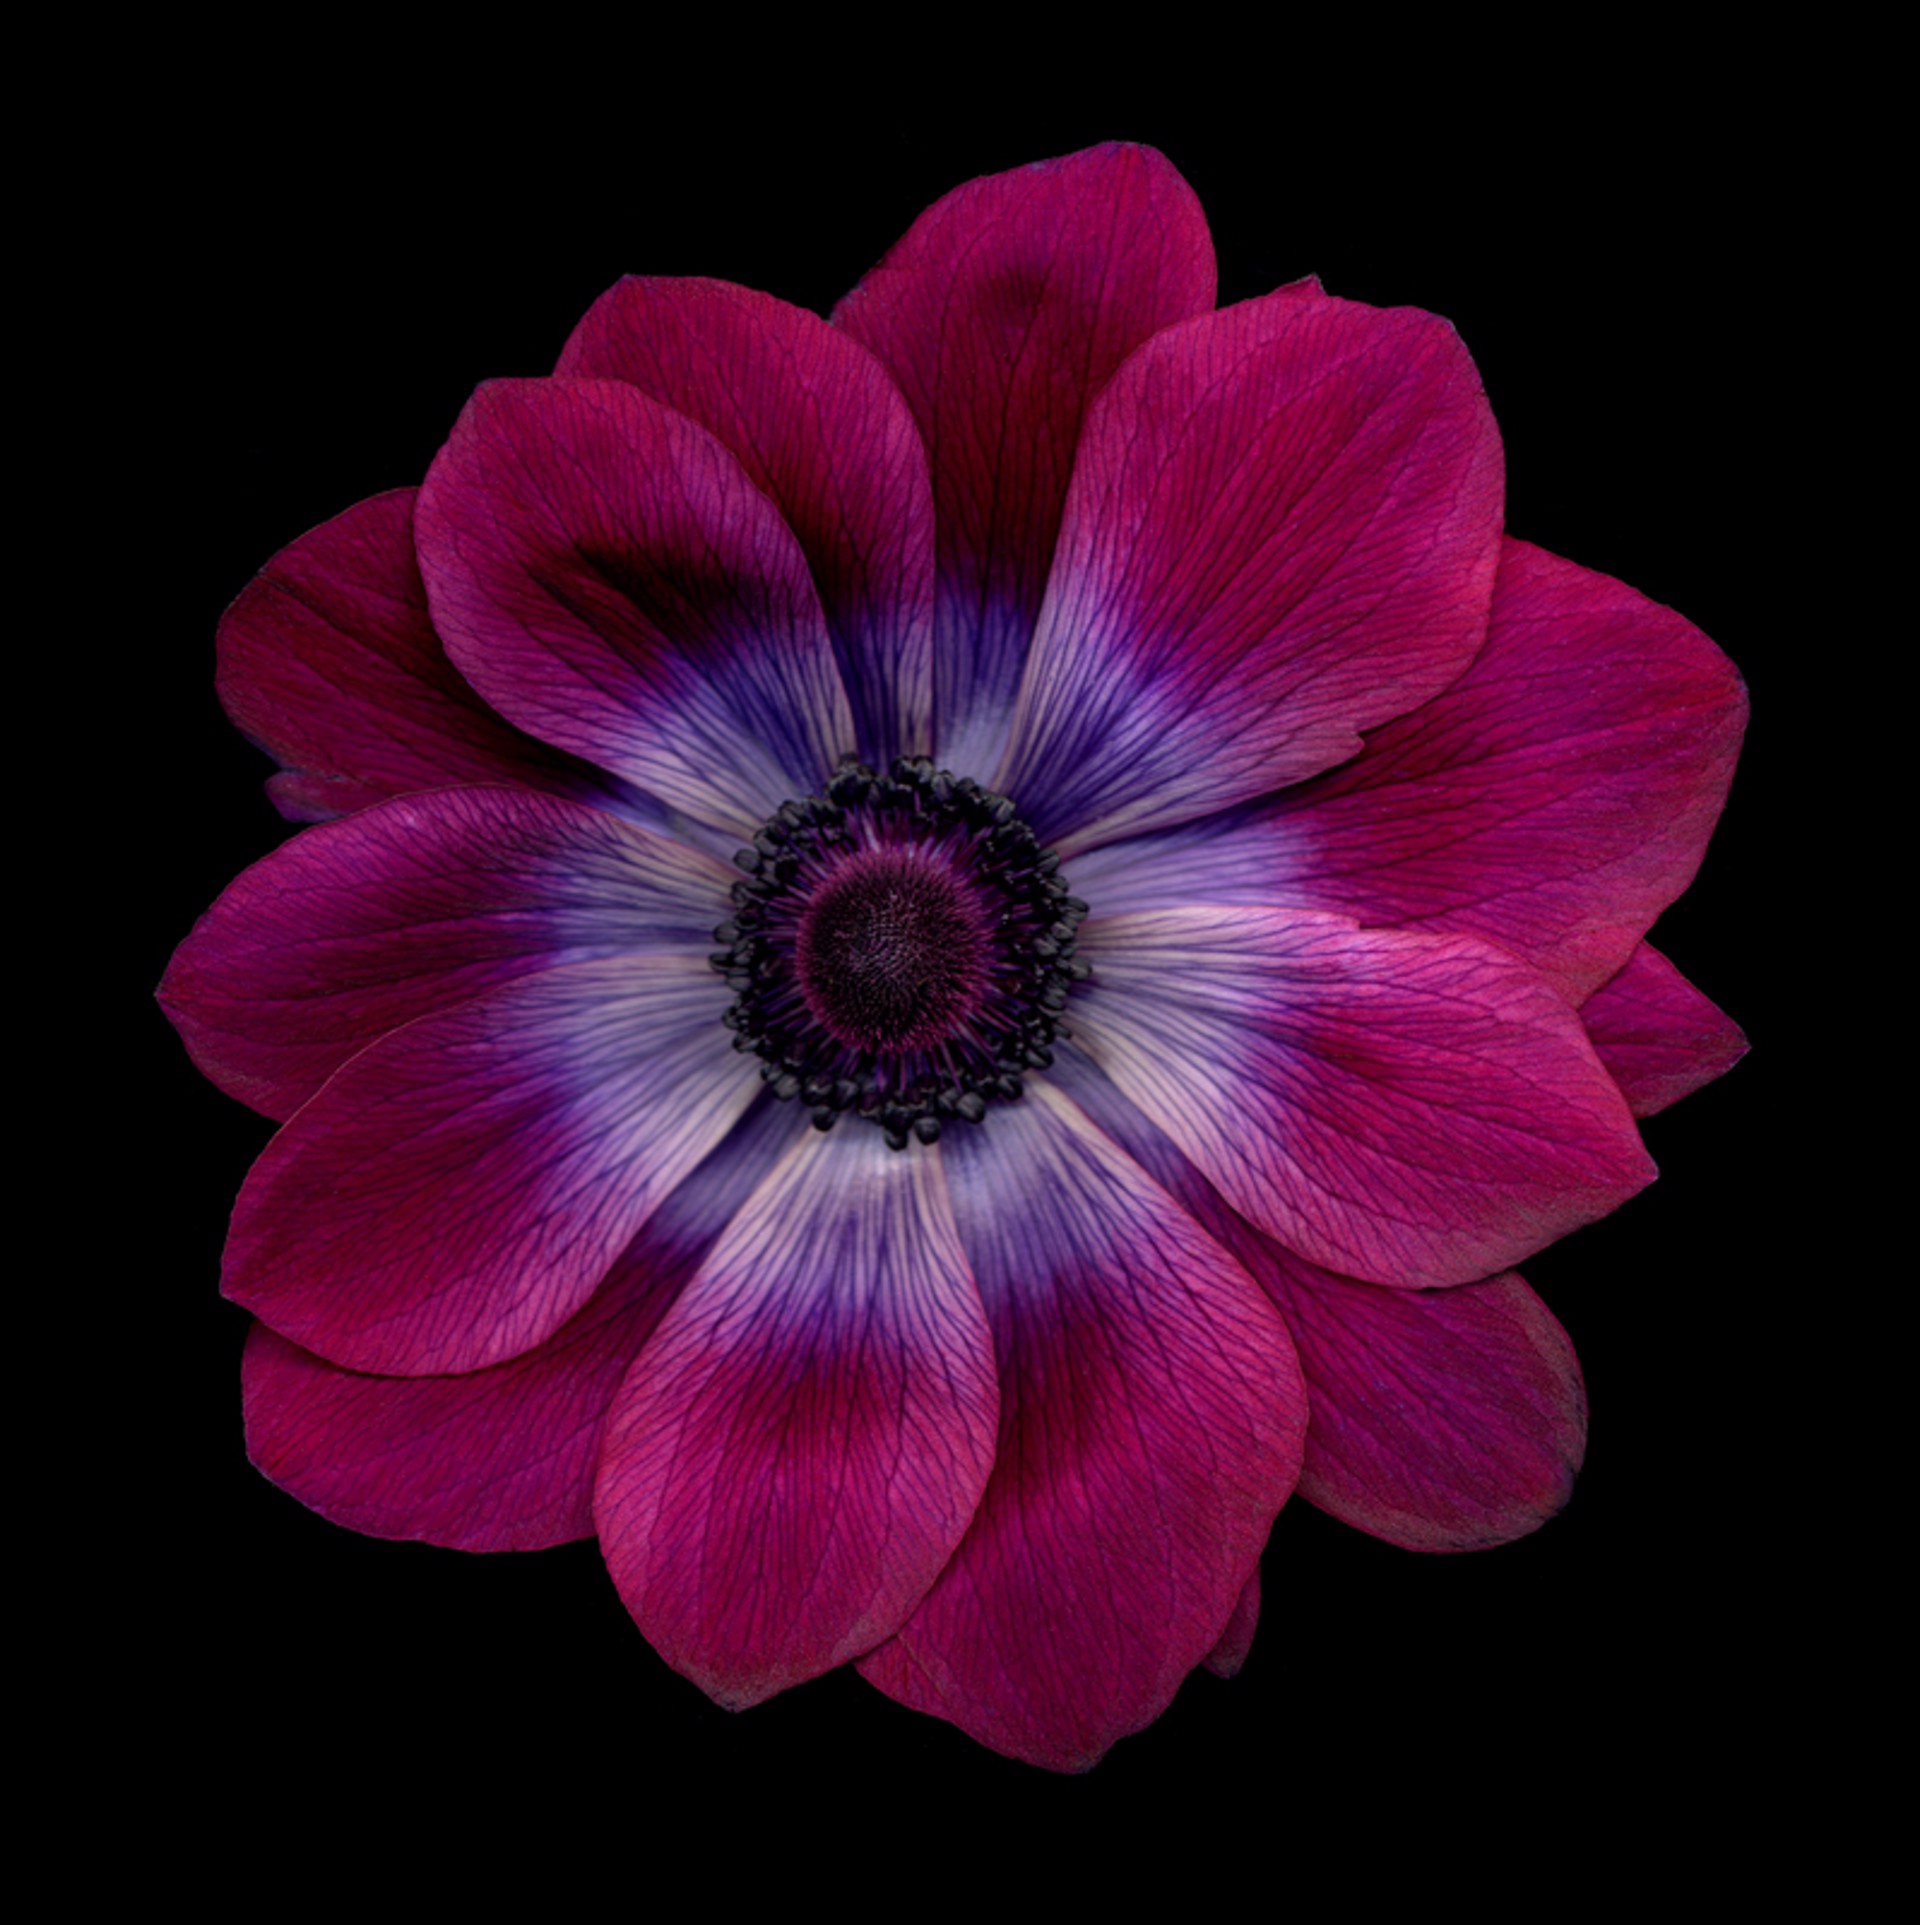 Flower 61 (Black Series) by Chad Kleitsch